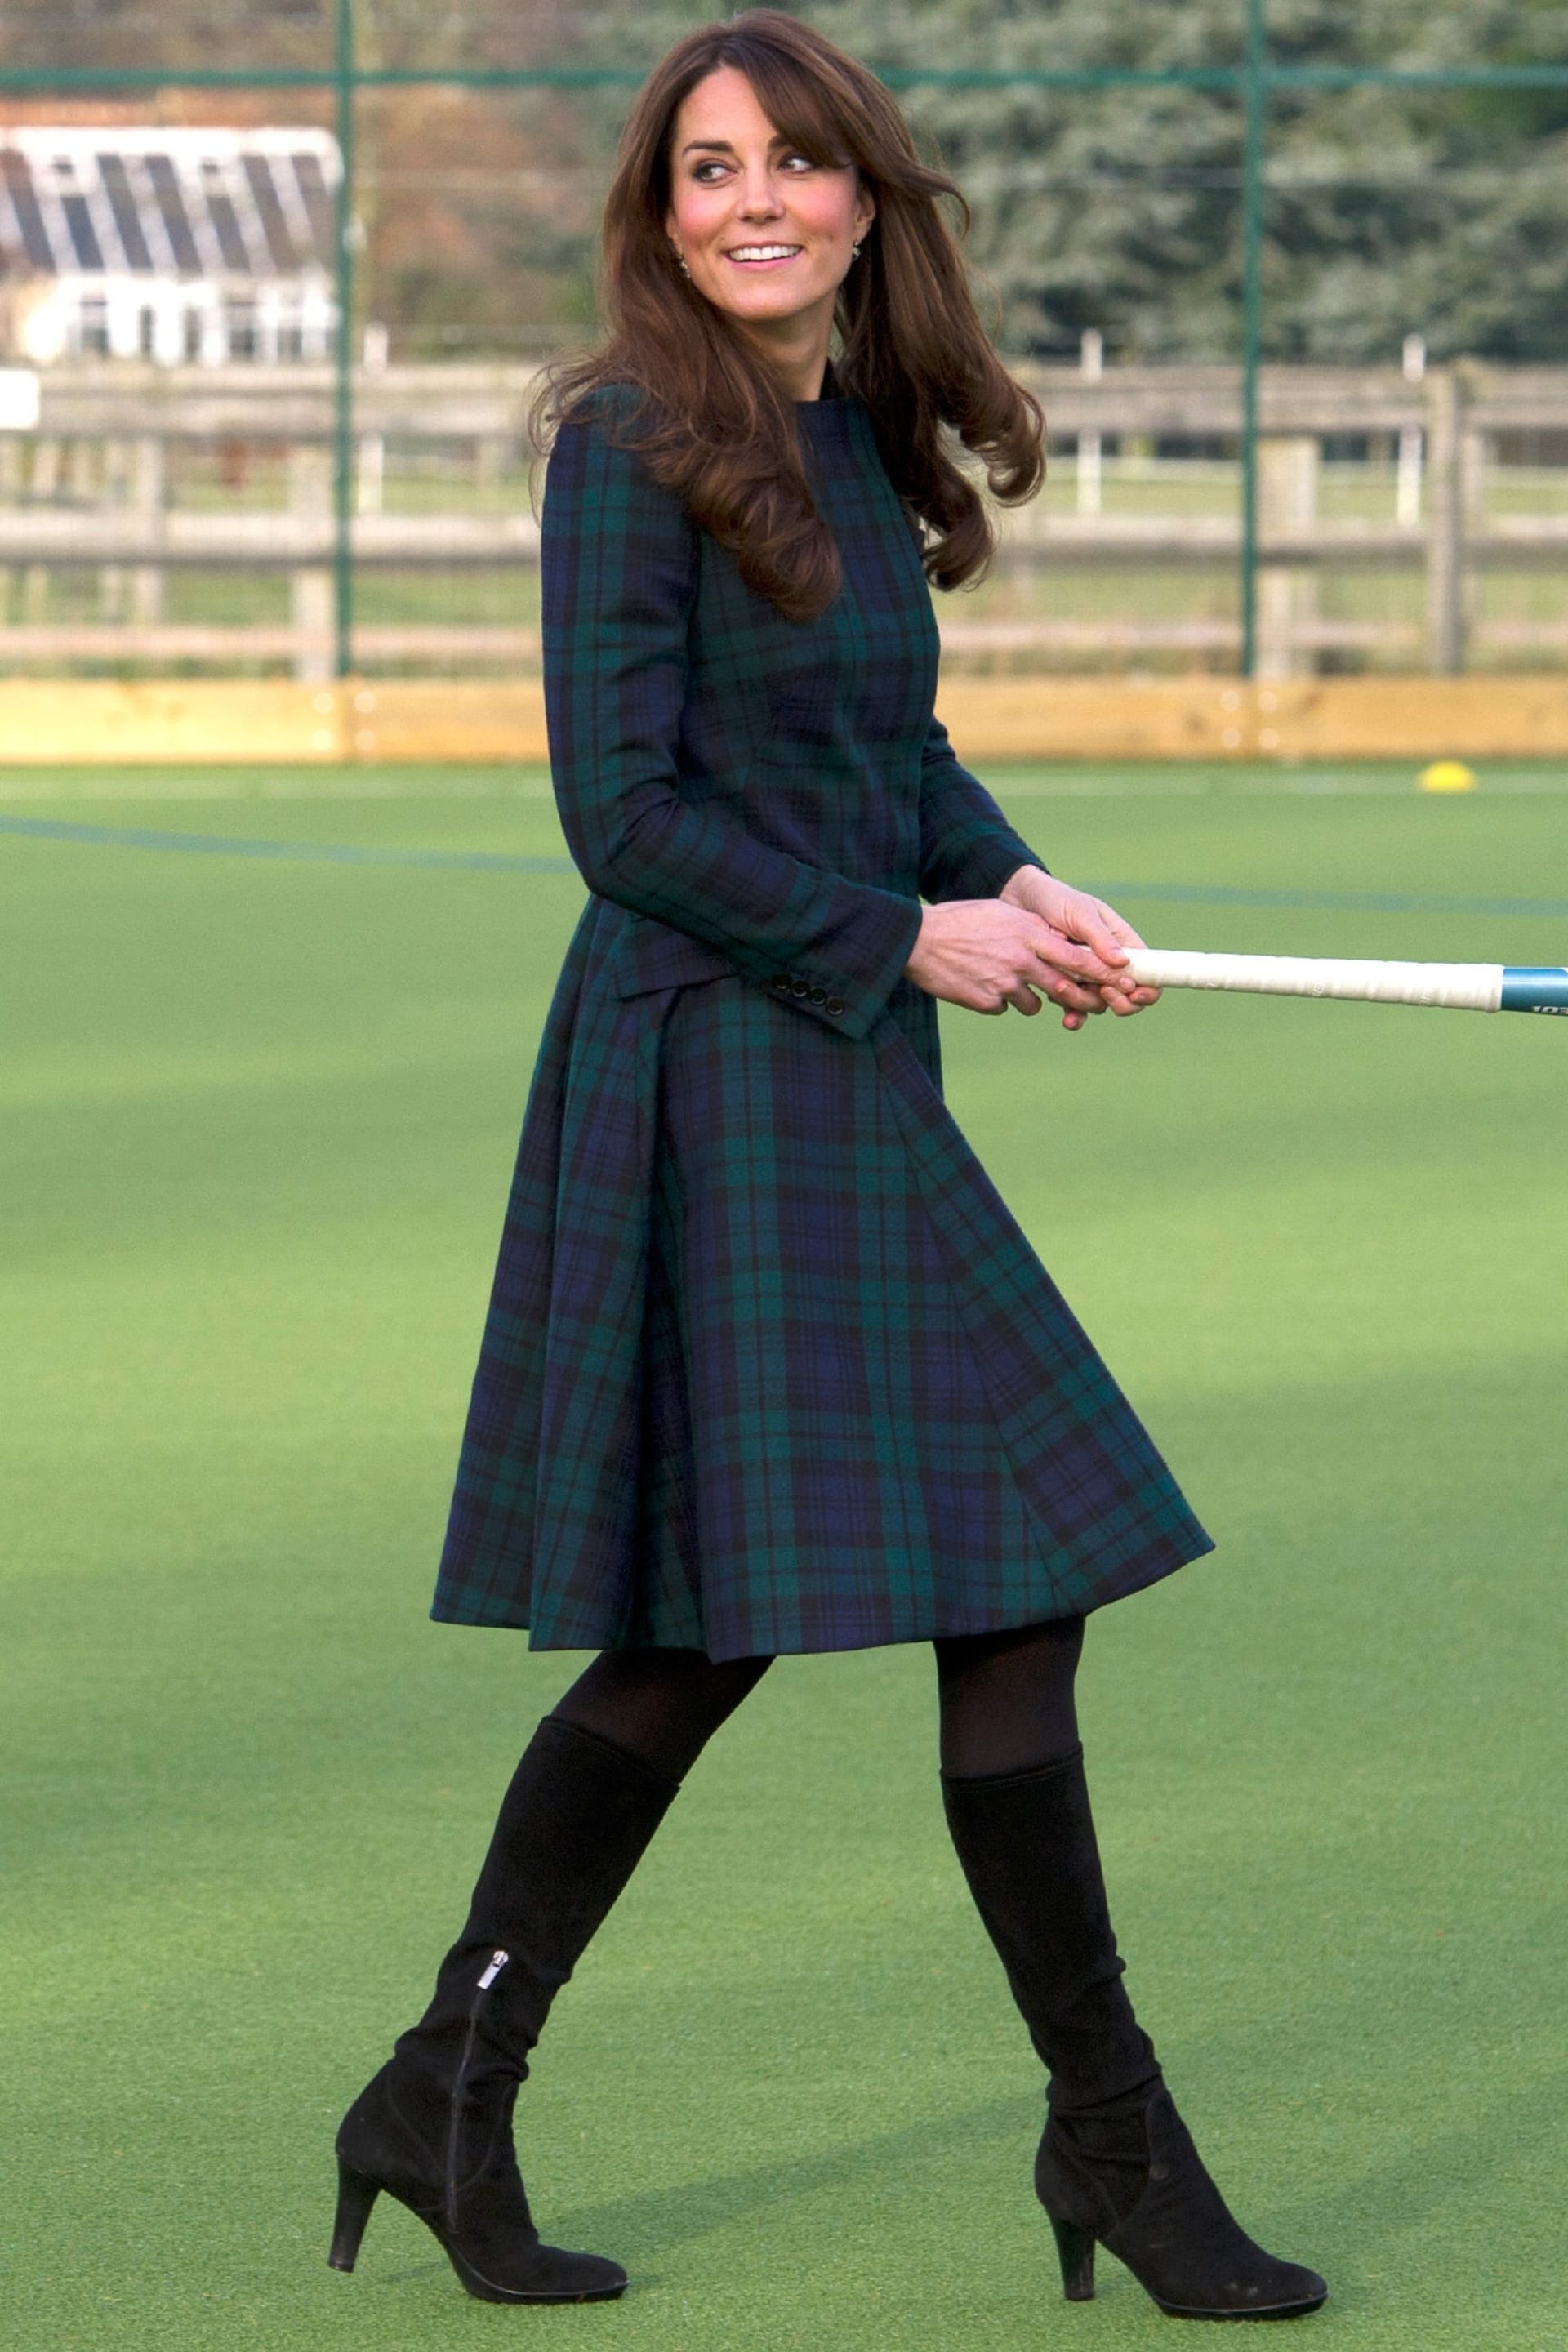 30. November 2012: Herzogin Kate besucht die St. Andrew’s School in Pangbourne, wo sie selbst Schülerin war und wo sie erstmals auf ihren jetzigen Ehemann Prinz William traf.